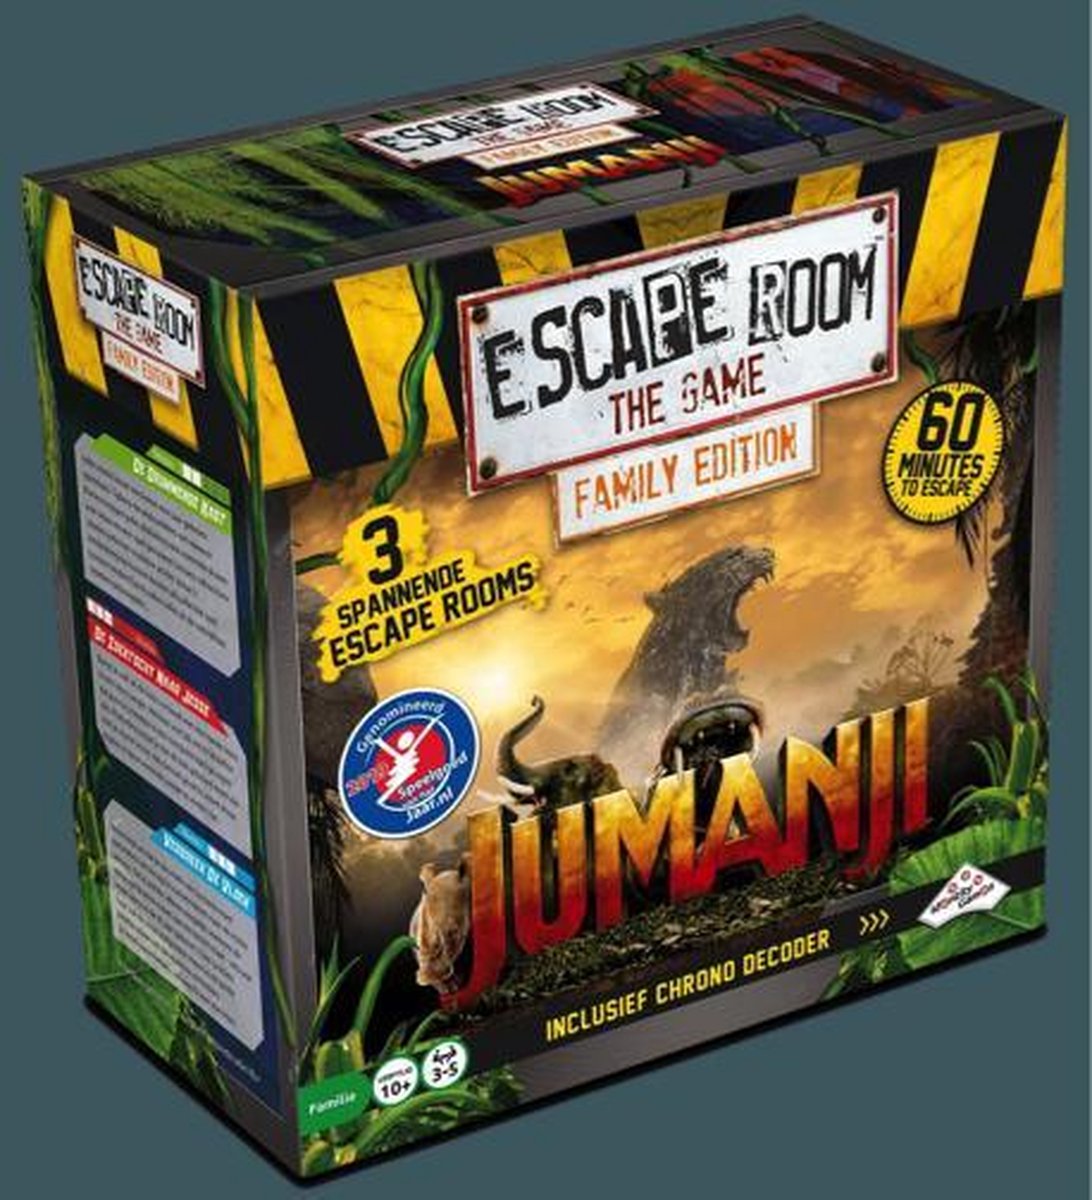 Escape Room: Le Jeu - Édition familiale - Jumanji